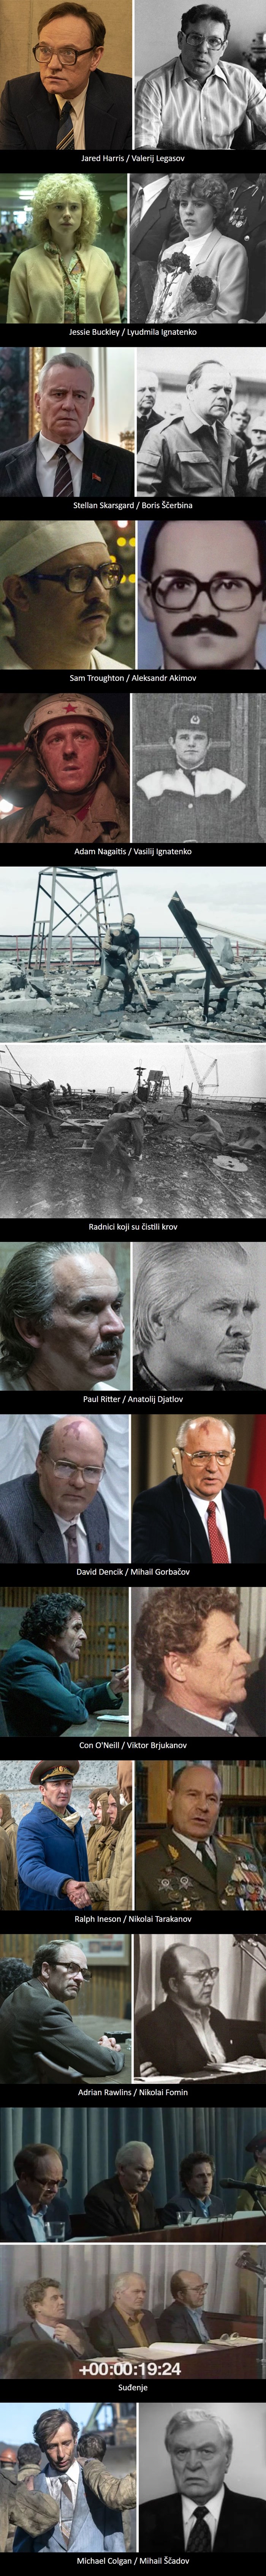 13 zanimljivih usporedbi koje pokazuju kako su u stvarnosti izgledali glavni likovi iz serije "Černobil"